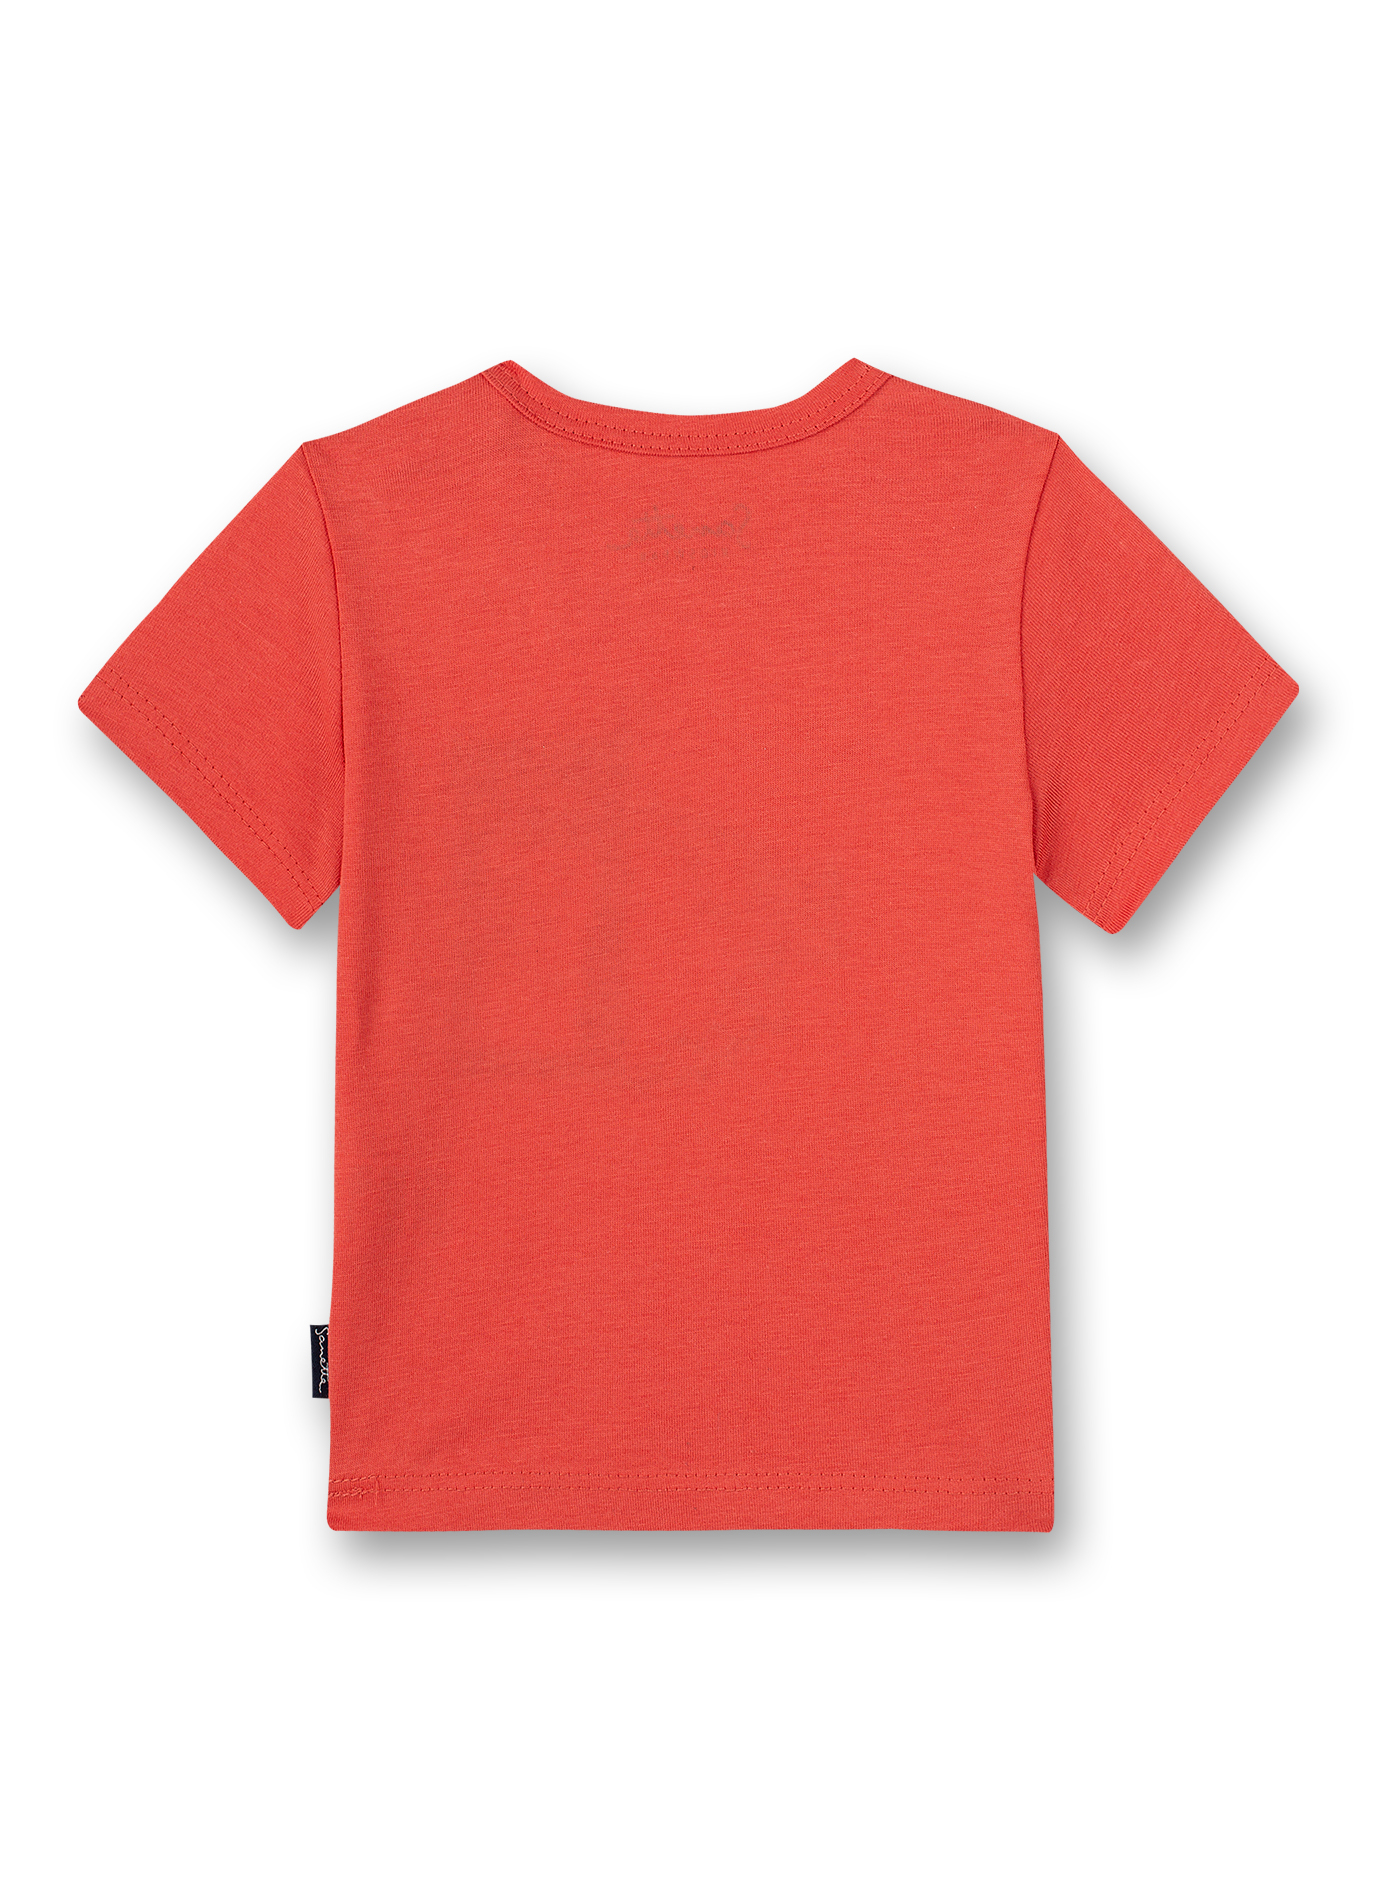 Jungen T-Shirt Rot Ocean Friends